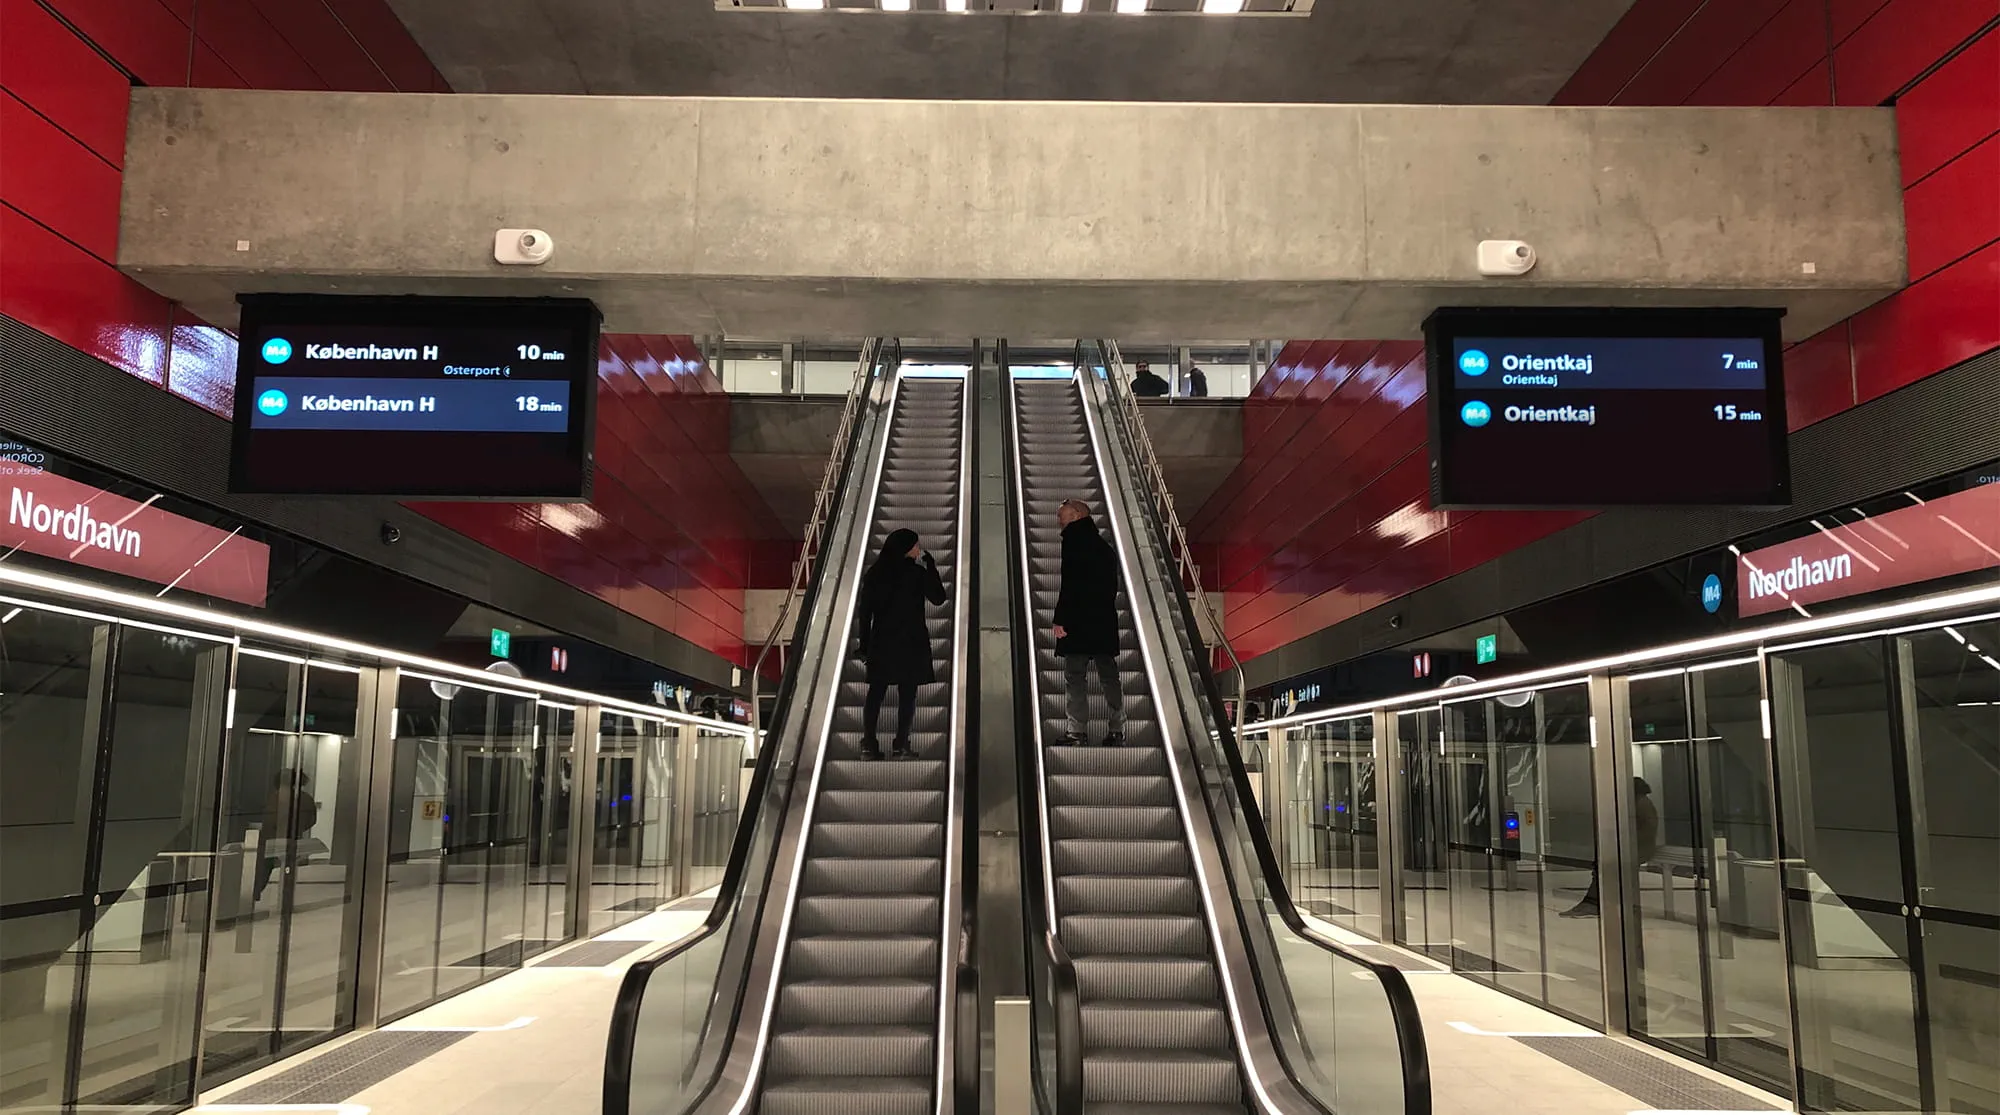 Nordhavn station